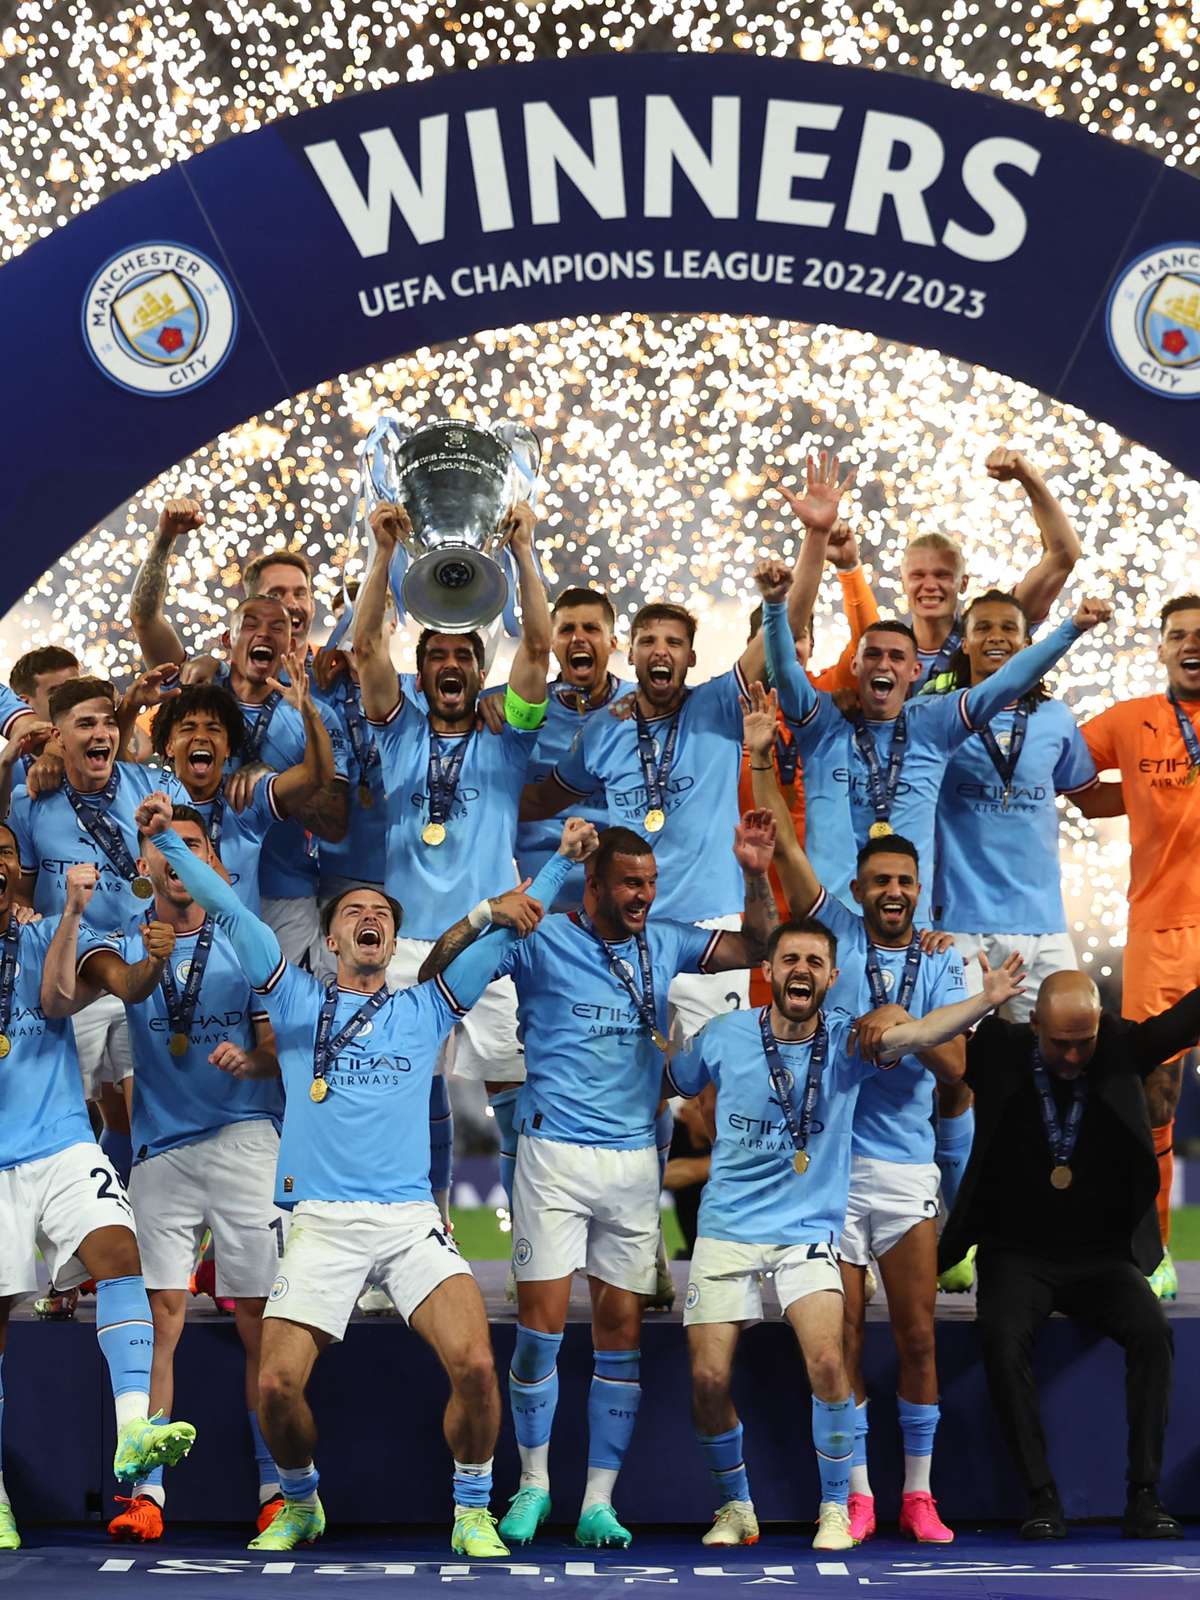 O Manchester City já foi campeão da Champions League?